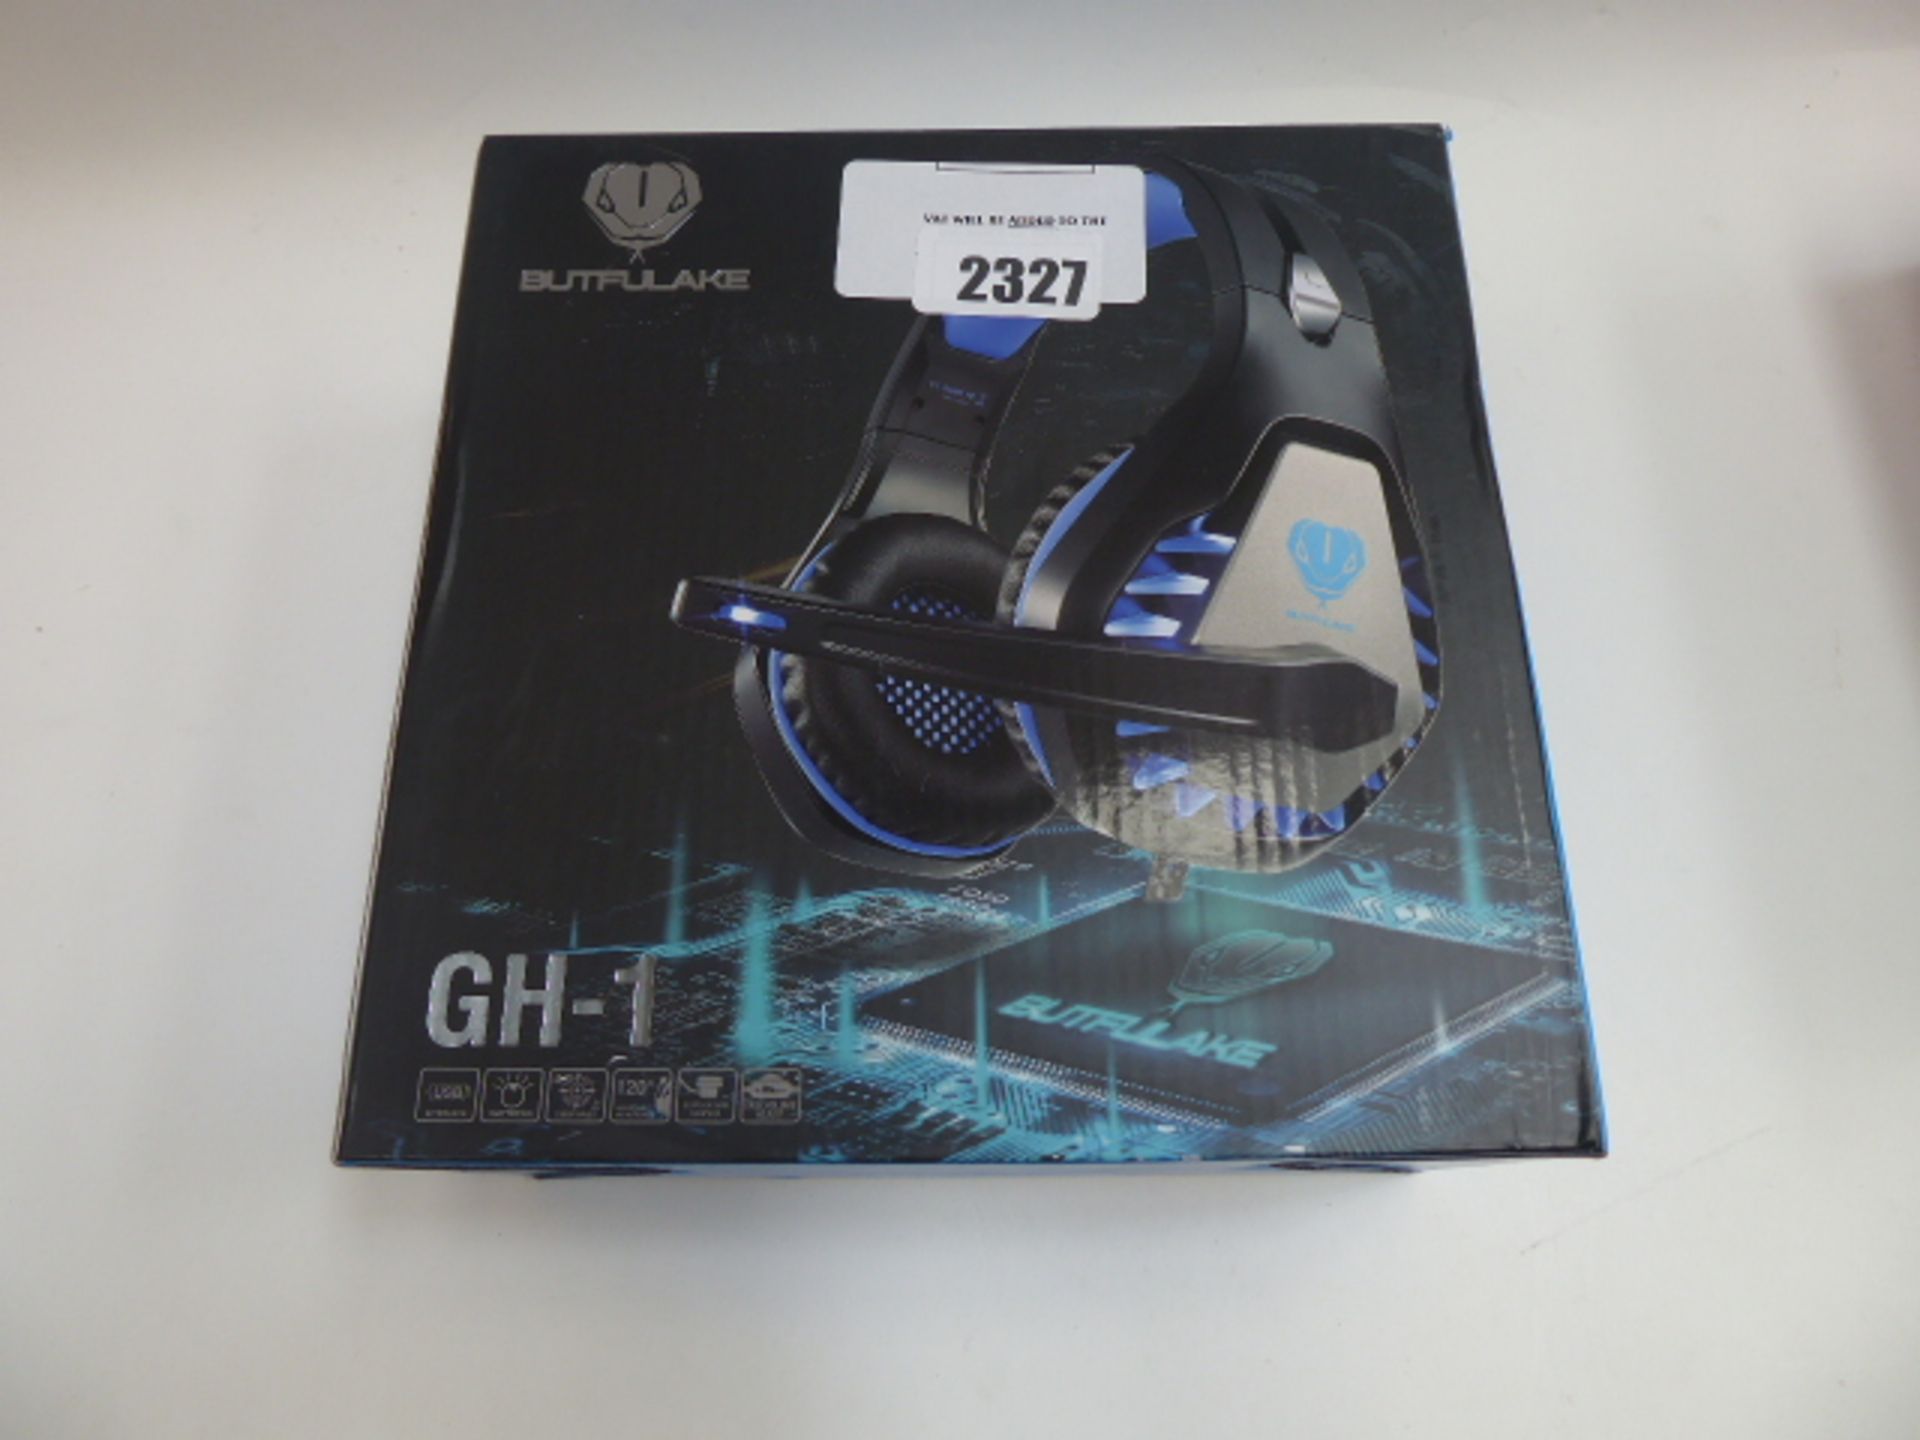 Butuflake GH-1 gaming headset